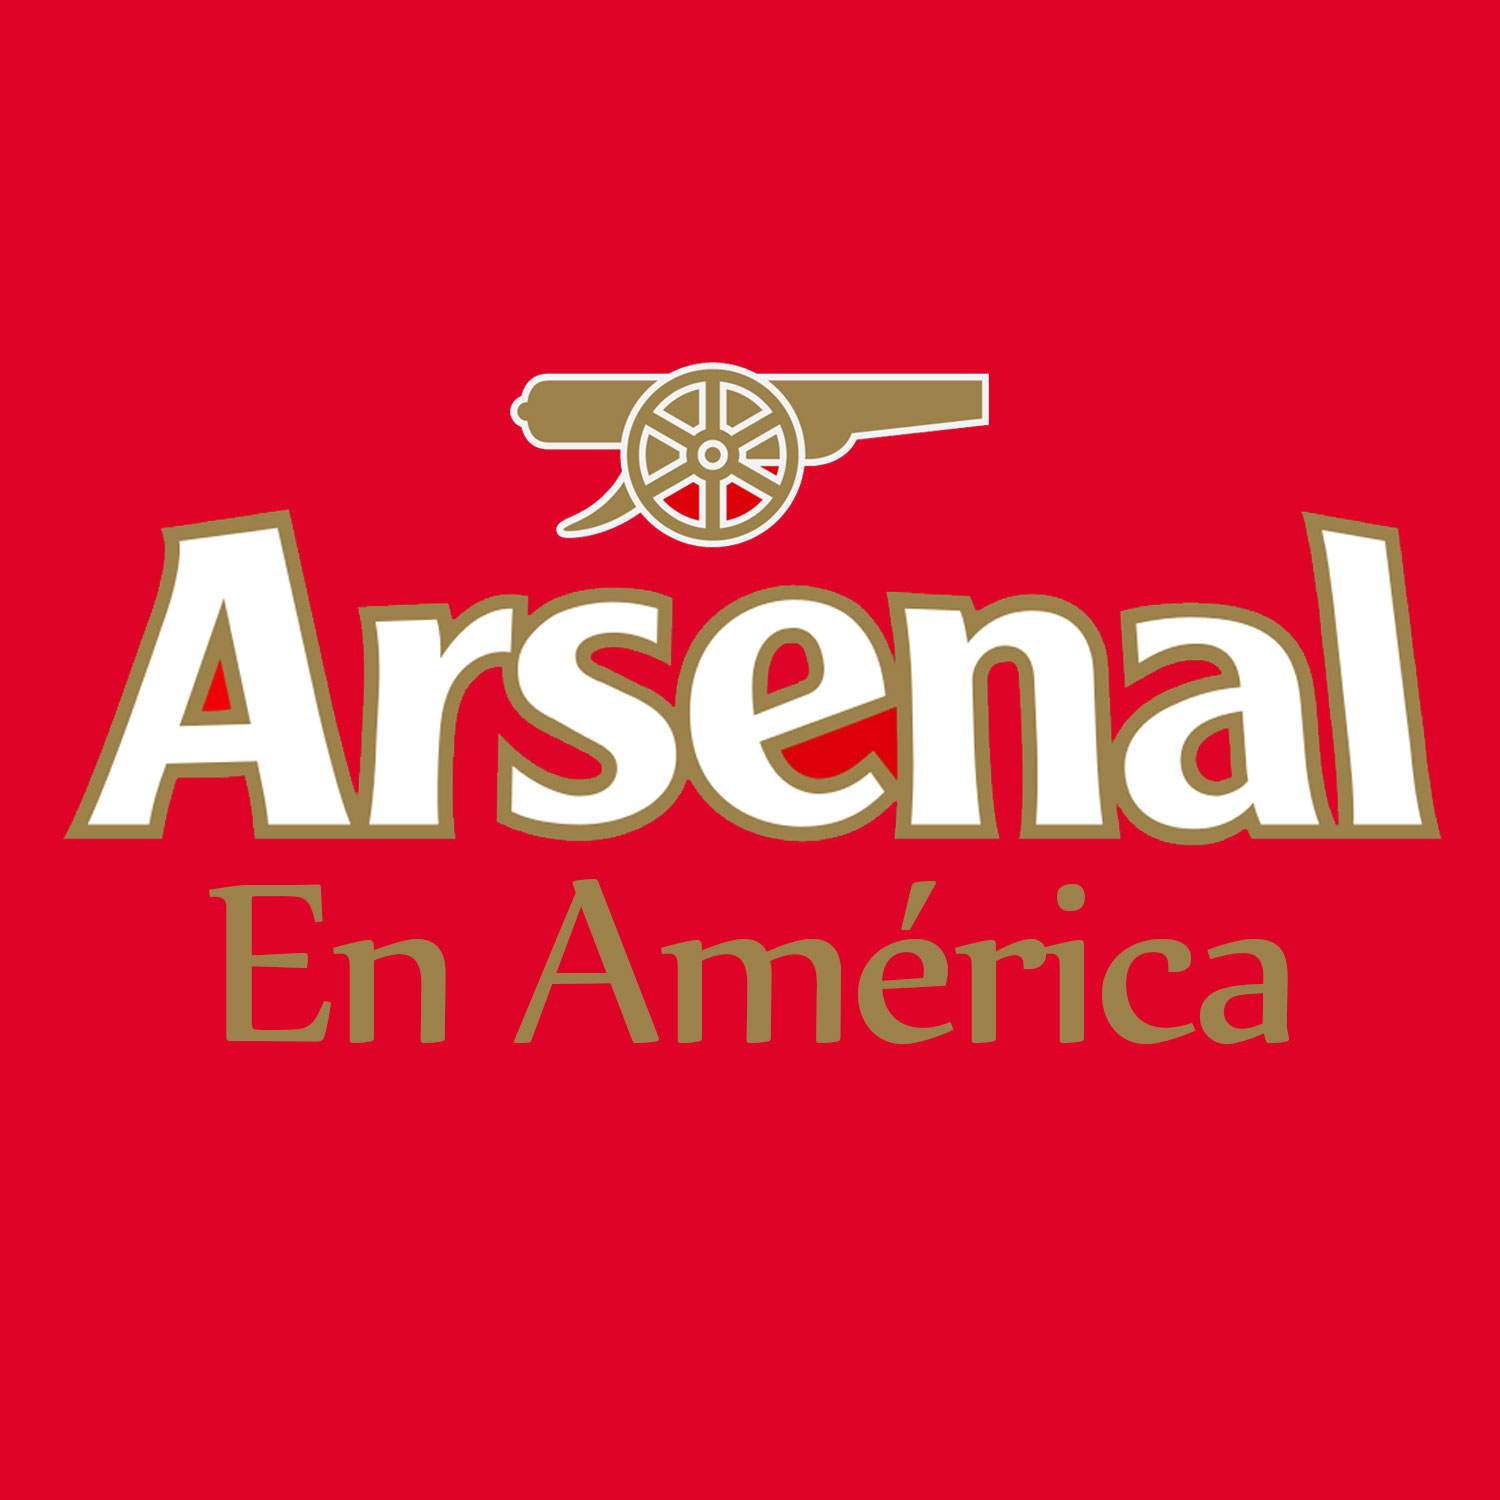 Arsenal En América